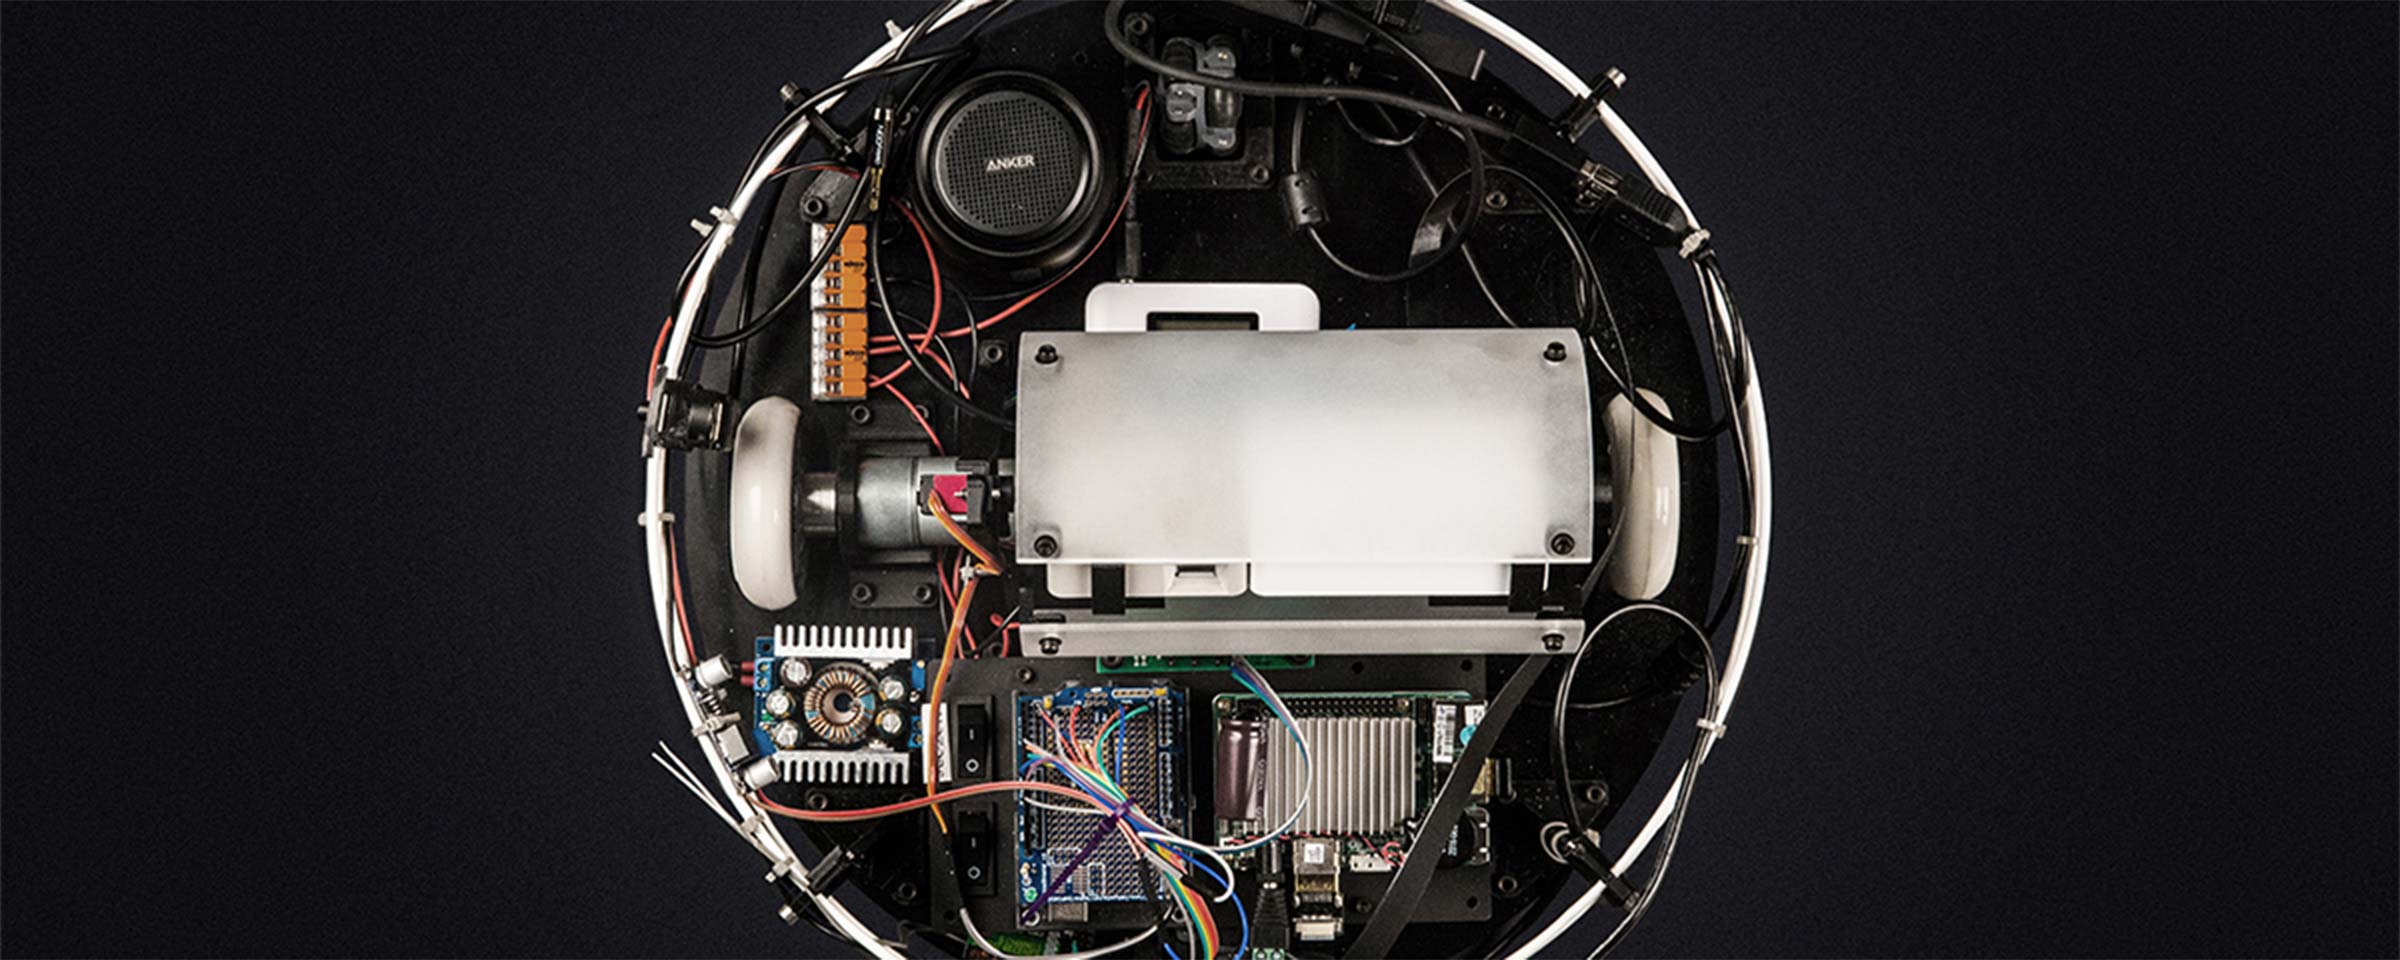 Draufsicht auf den Kopernikus Roboter mit freiliegender Technologie